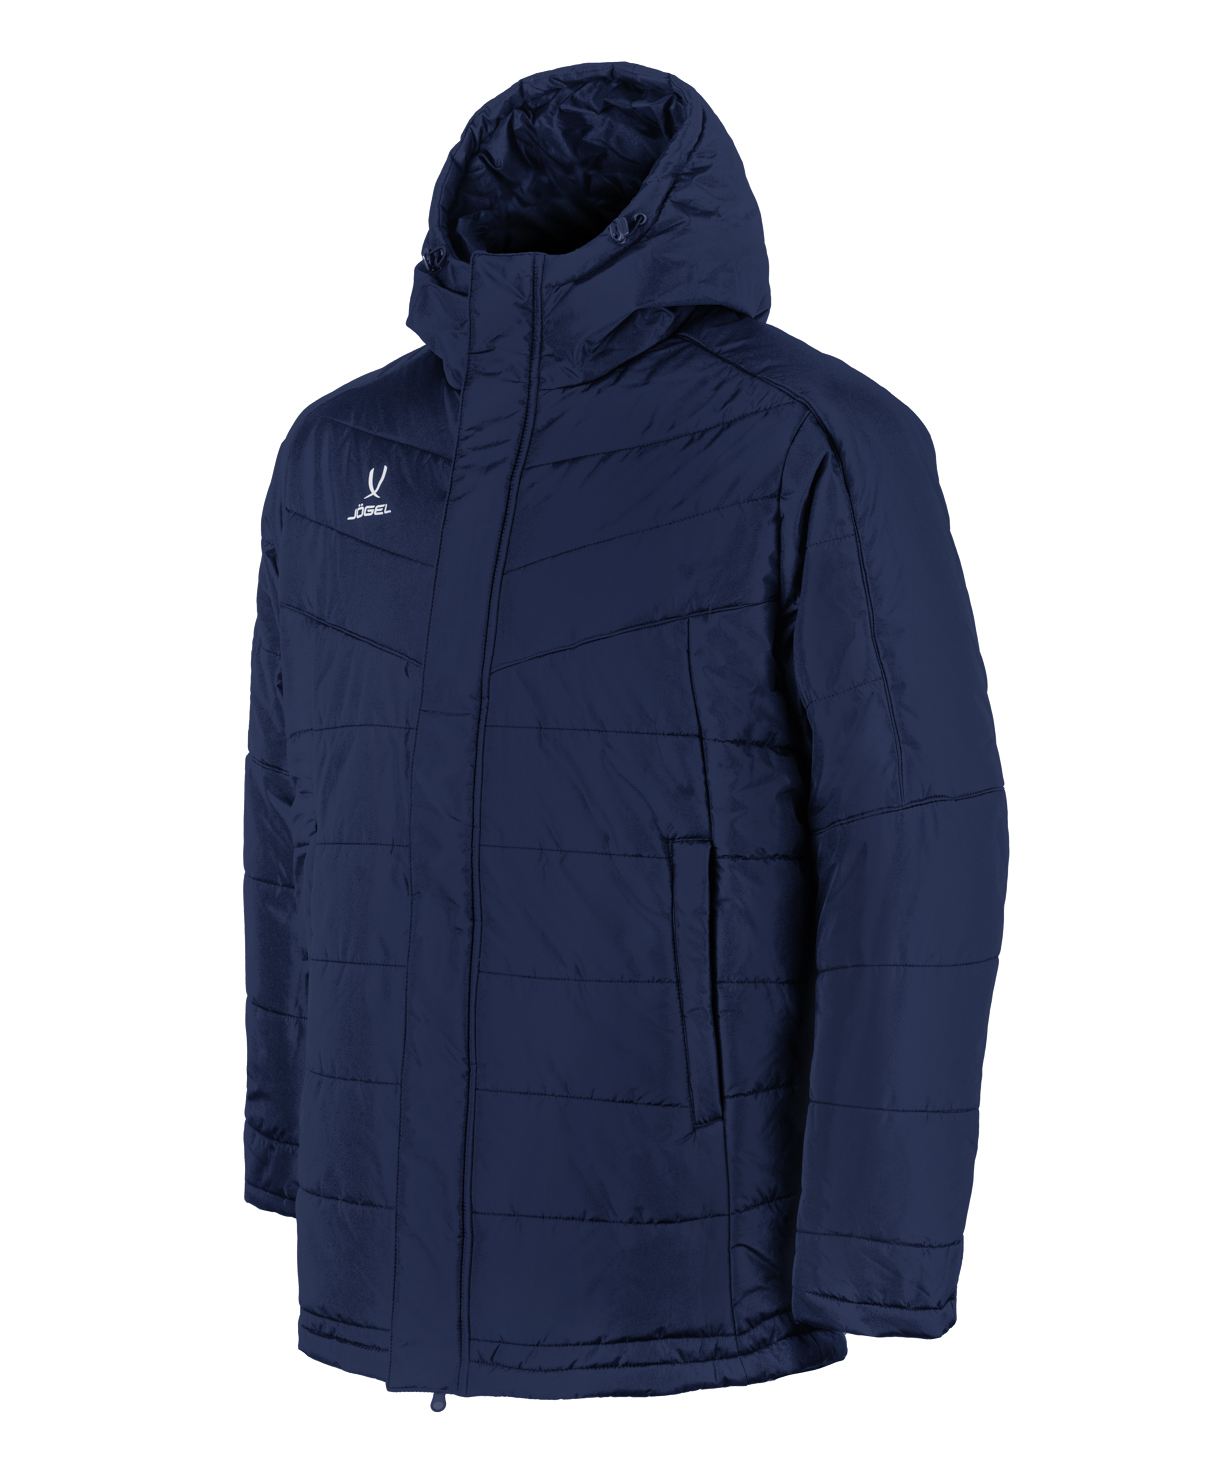 Куртка утепленная Jogel CAMP Padded Jacket, темно-синий, детский - XS УТ-00021070_XS бутсы футбольные jogel rapido jsh401 синий